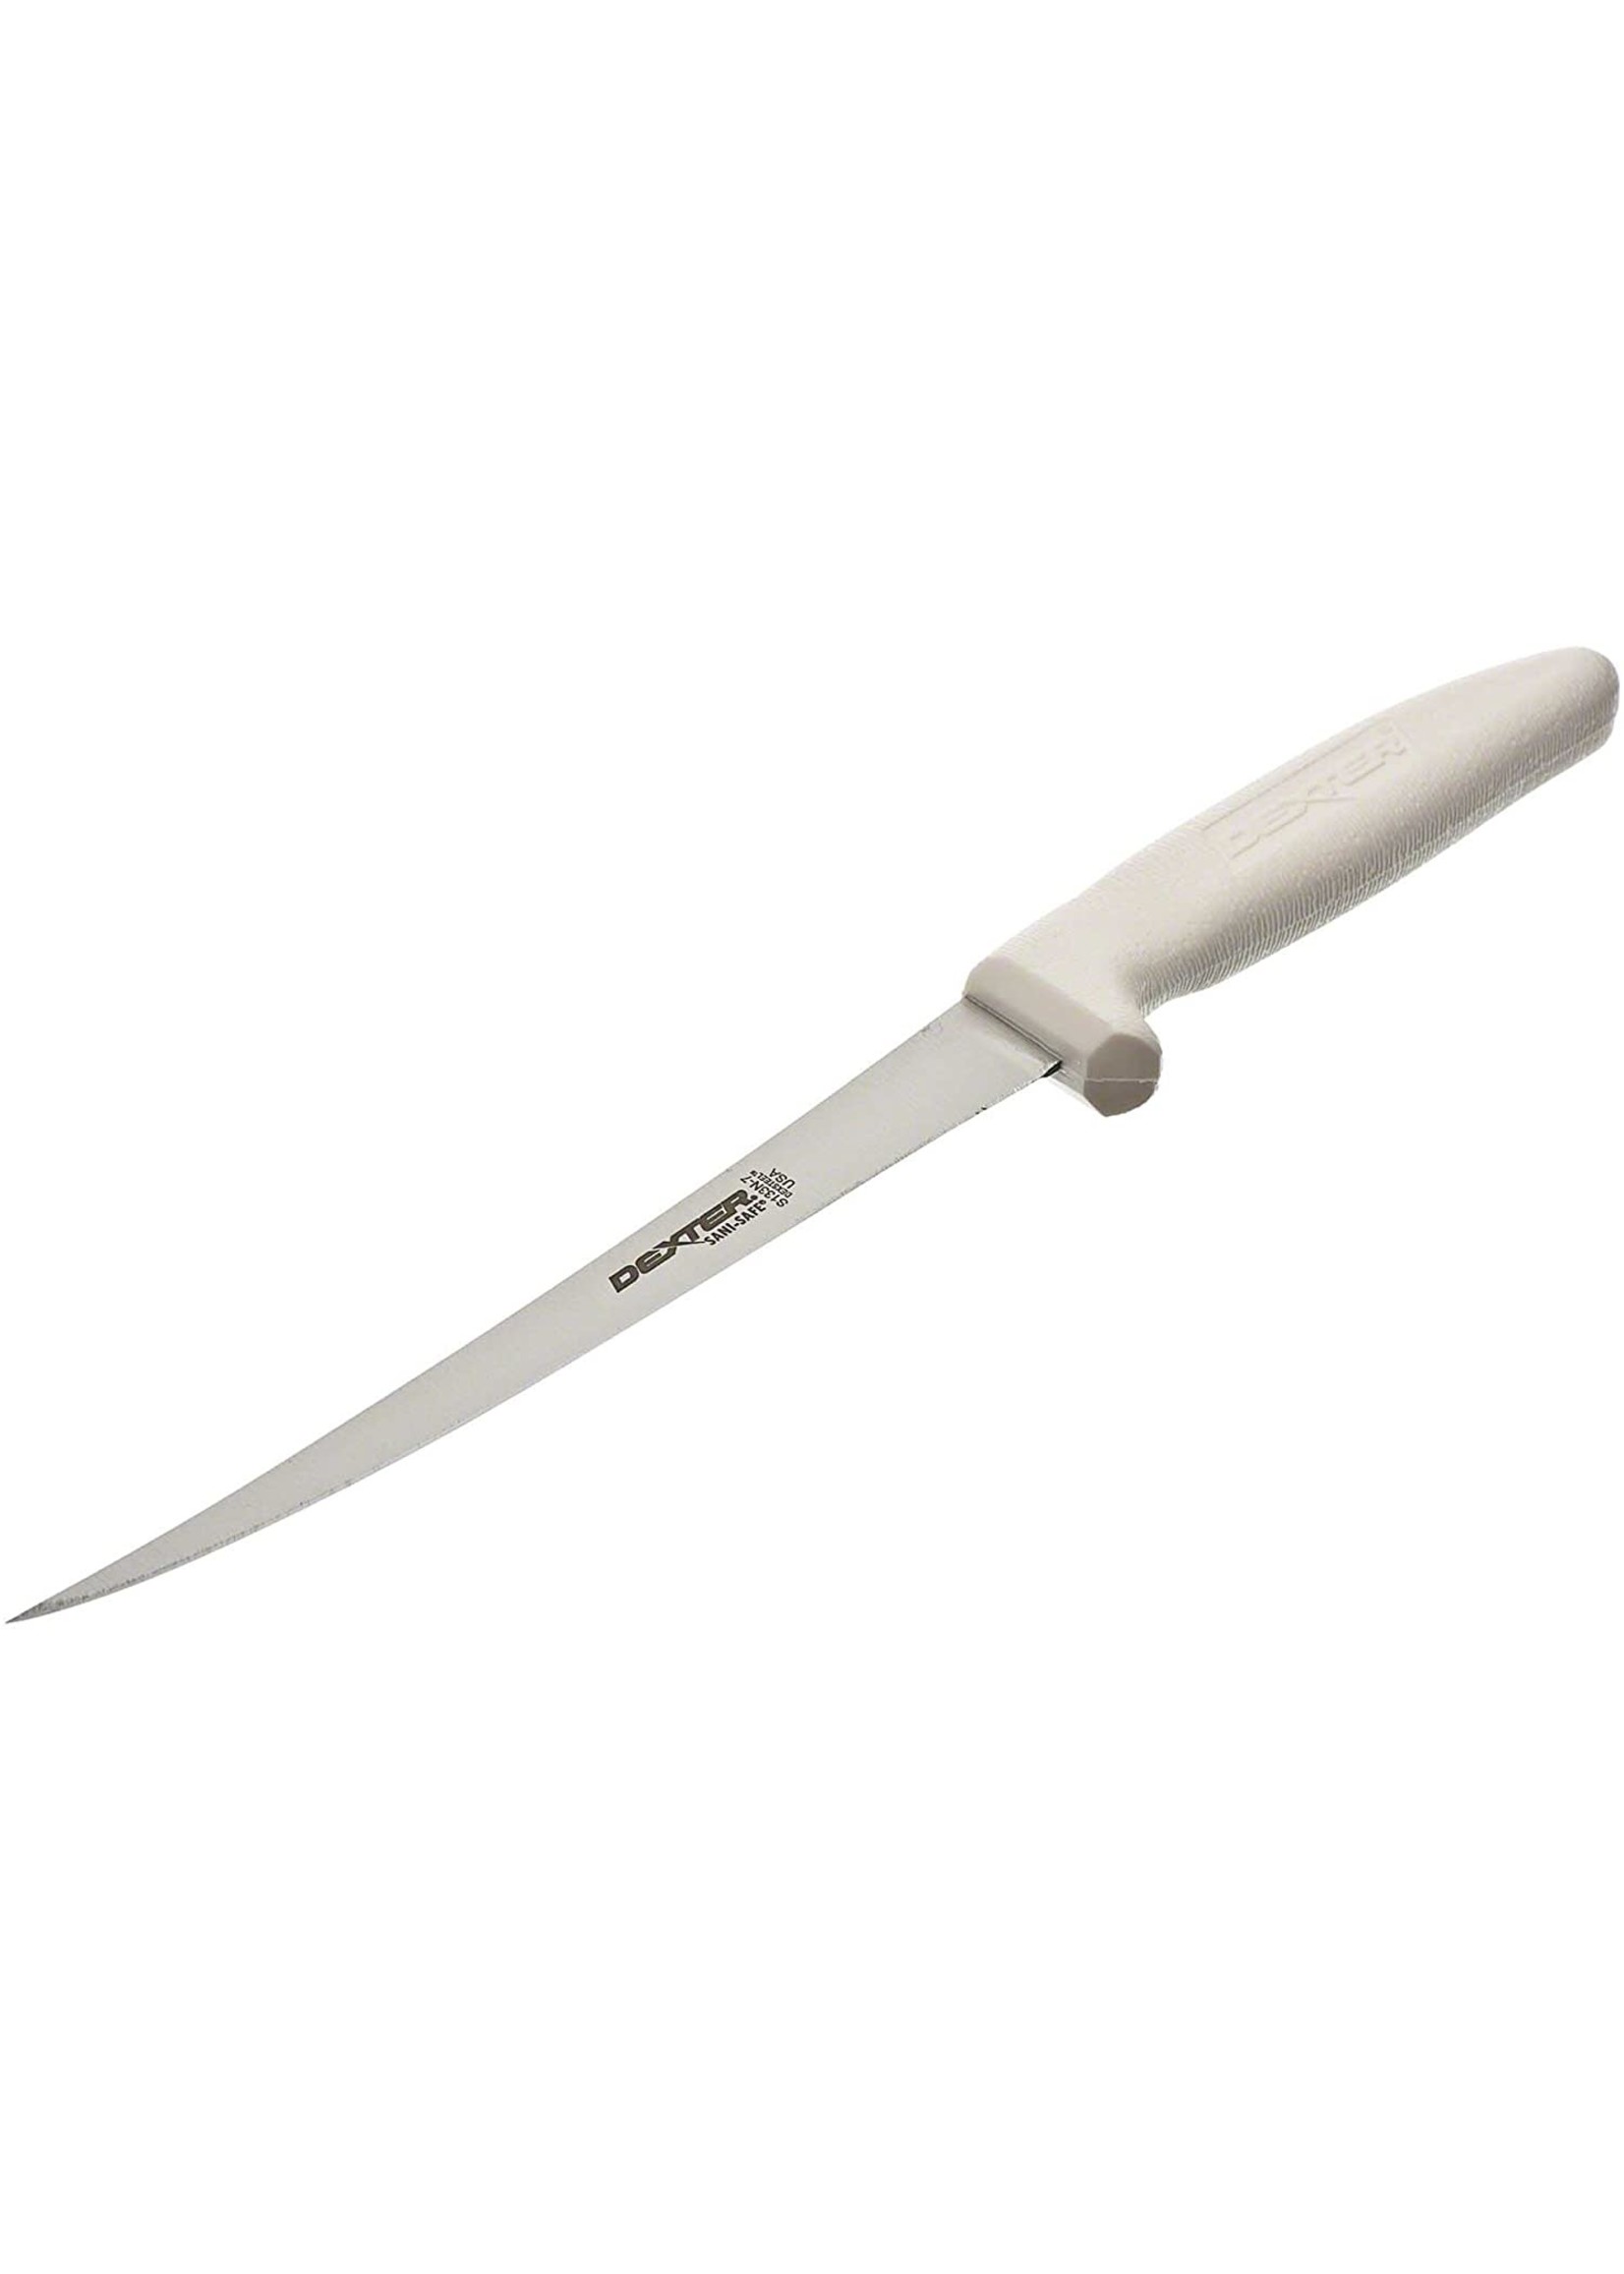 Dexter-Russell Inc Dexter 7" Flexible fillet knife